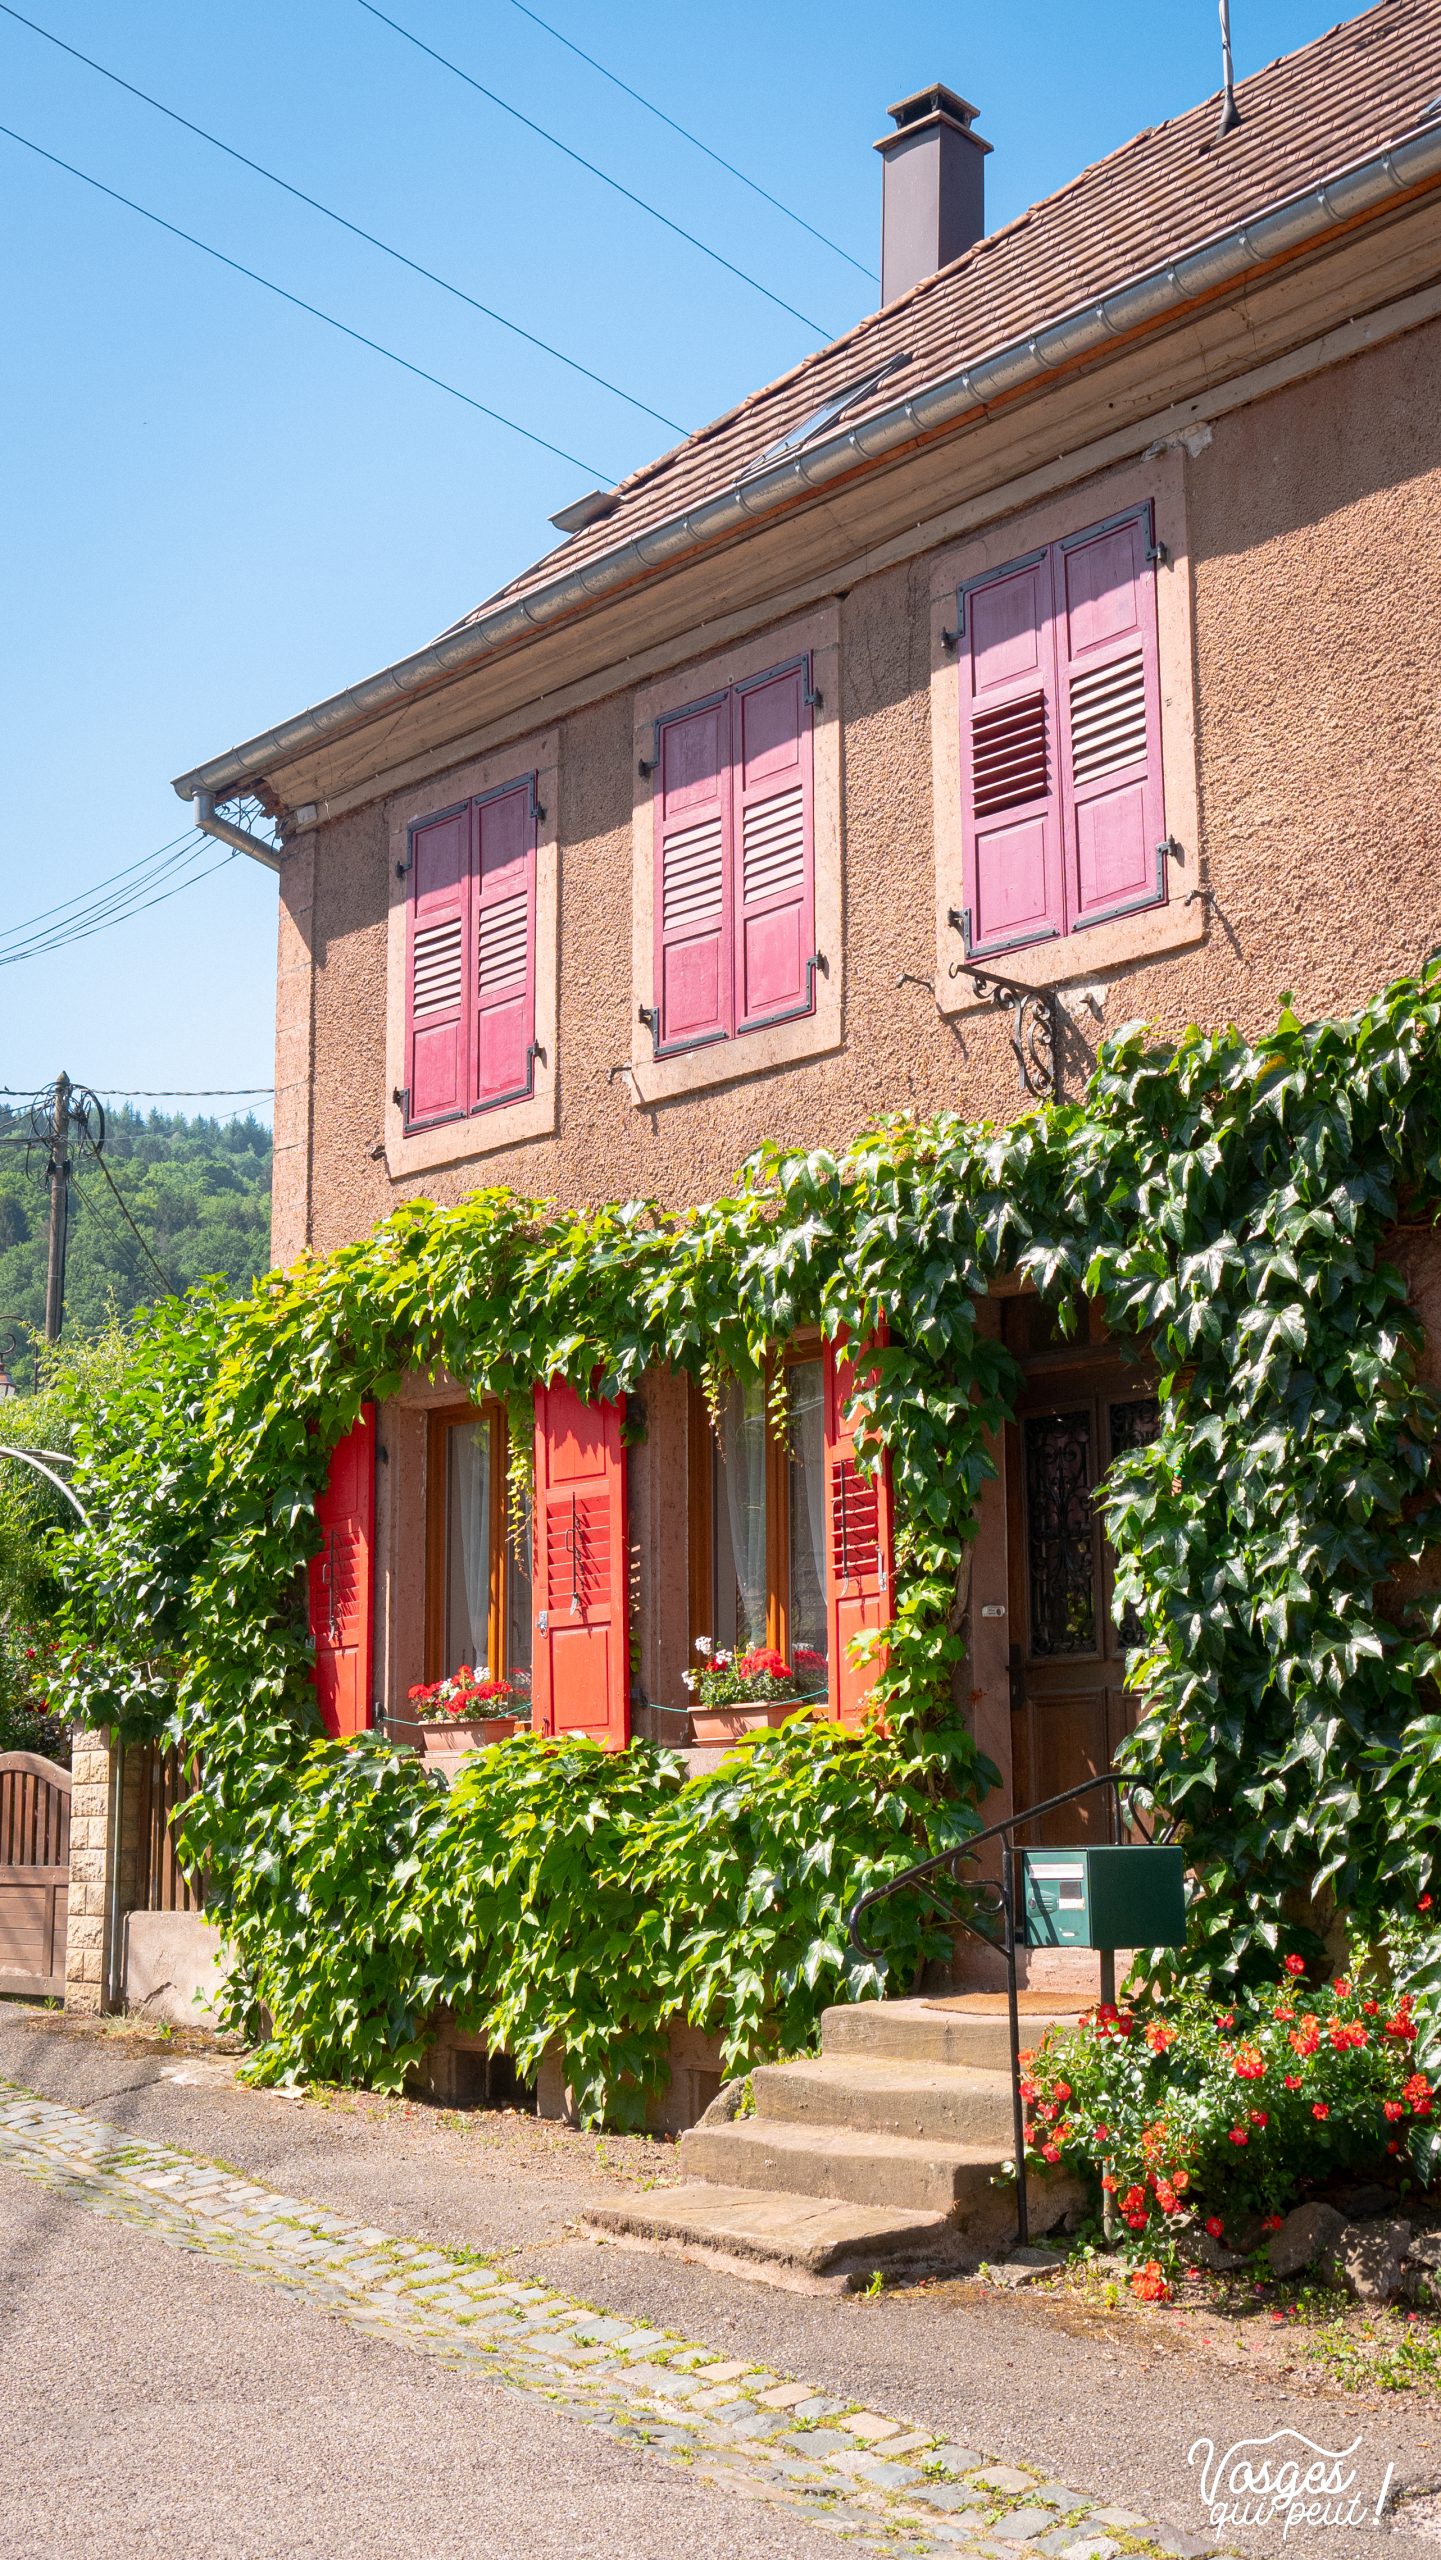 Maison fleurie dans Russ, un village du Massif des Vosges